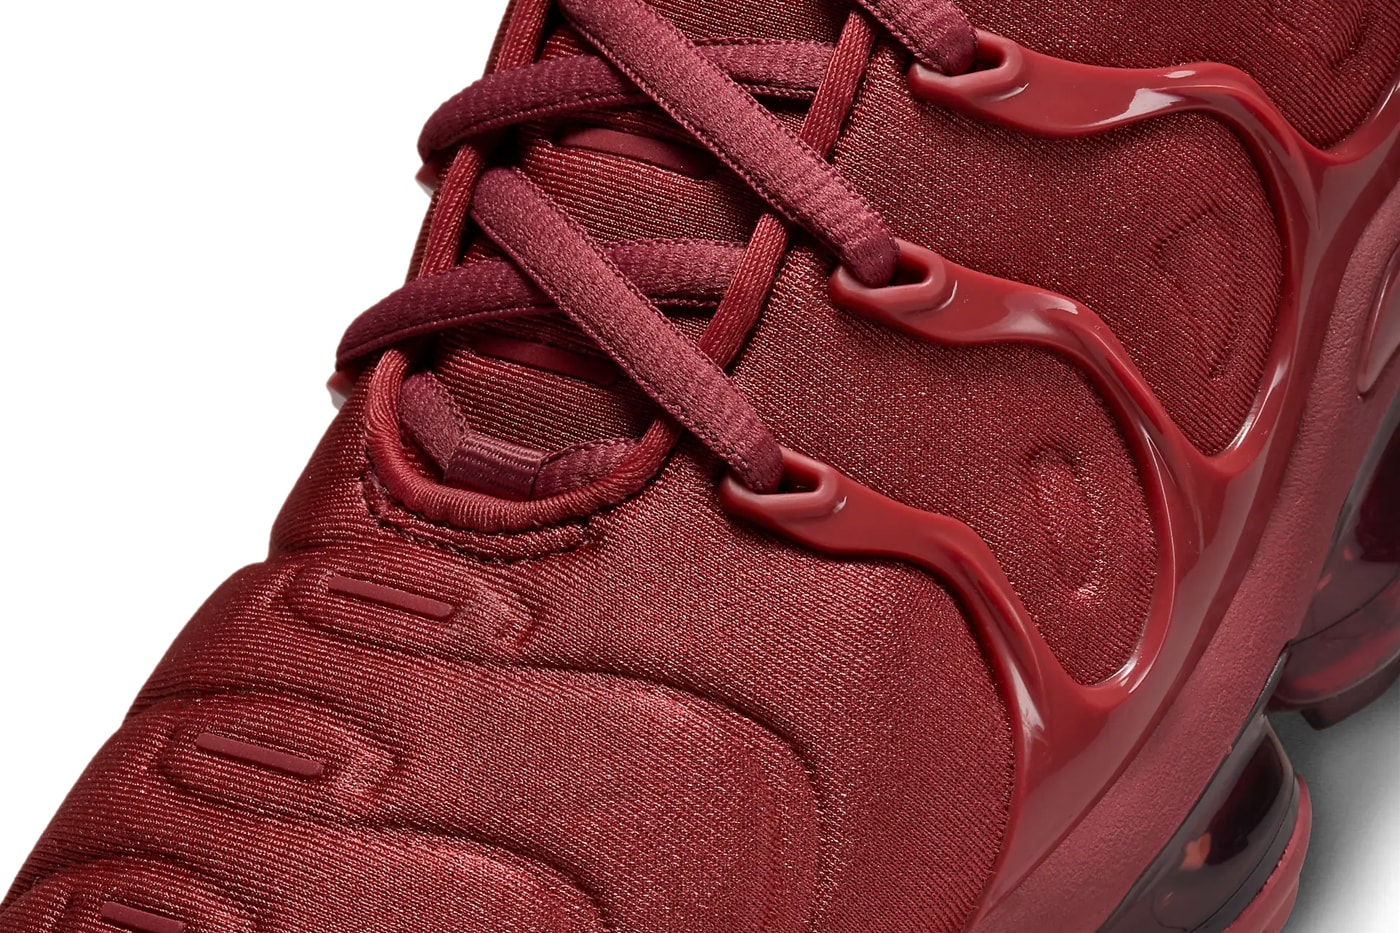 ナイキ エア ベイパーマックス プラスから大胆なオールレッドの新作が登場 Nike Air Vapormax Plus Surfaces in an All-Red Iteration FQ8878-661 Release Info swoosh technical sneaker